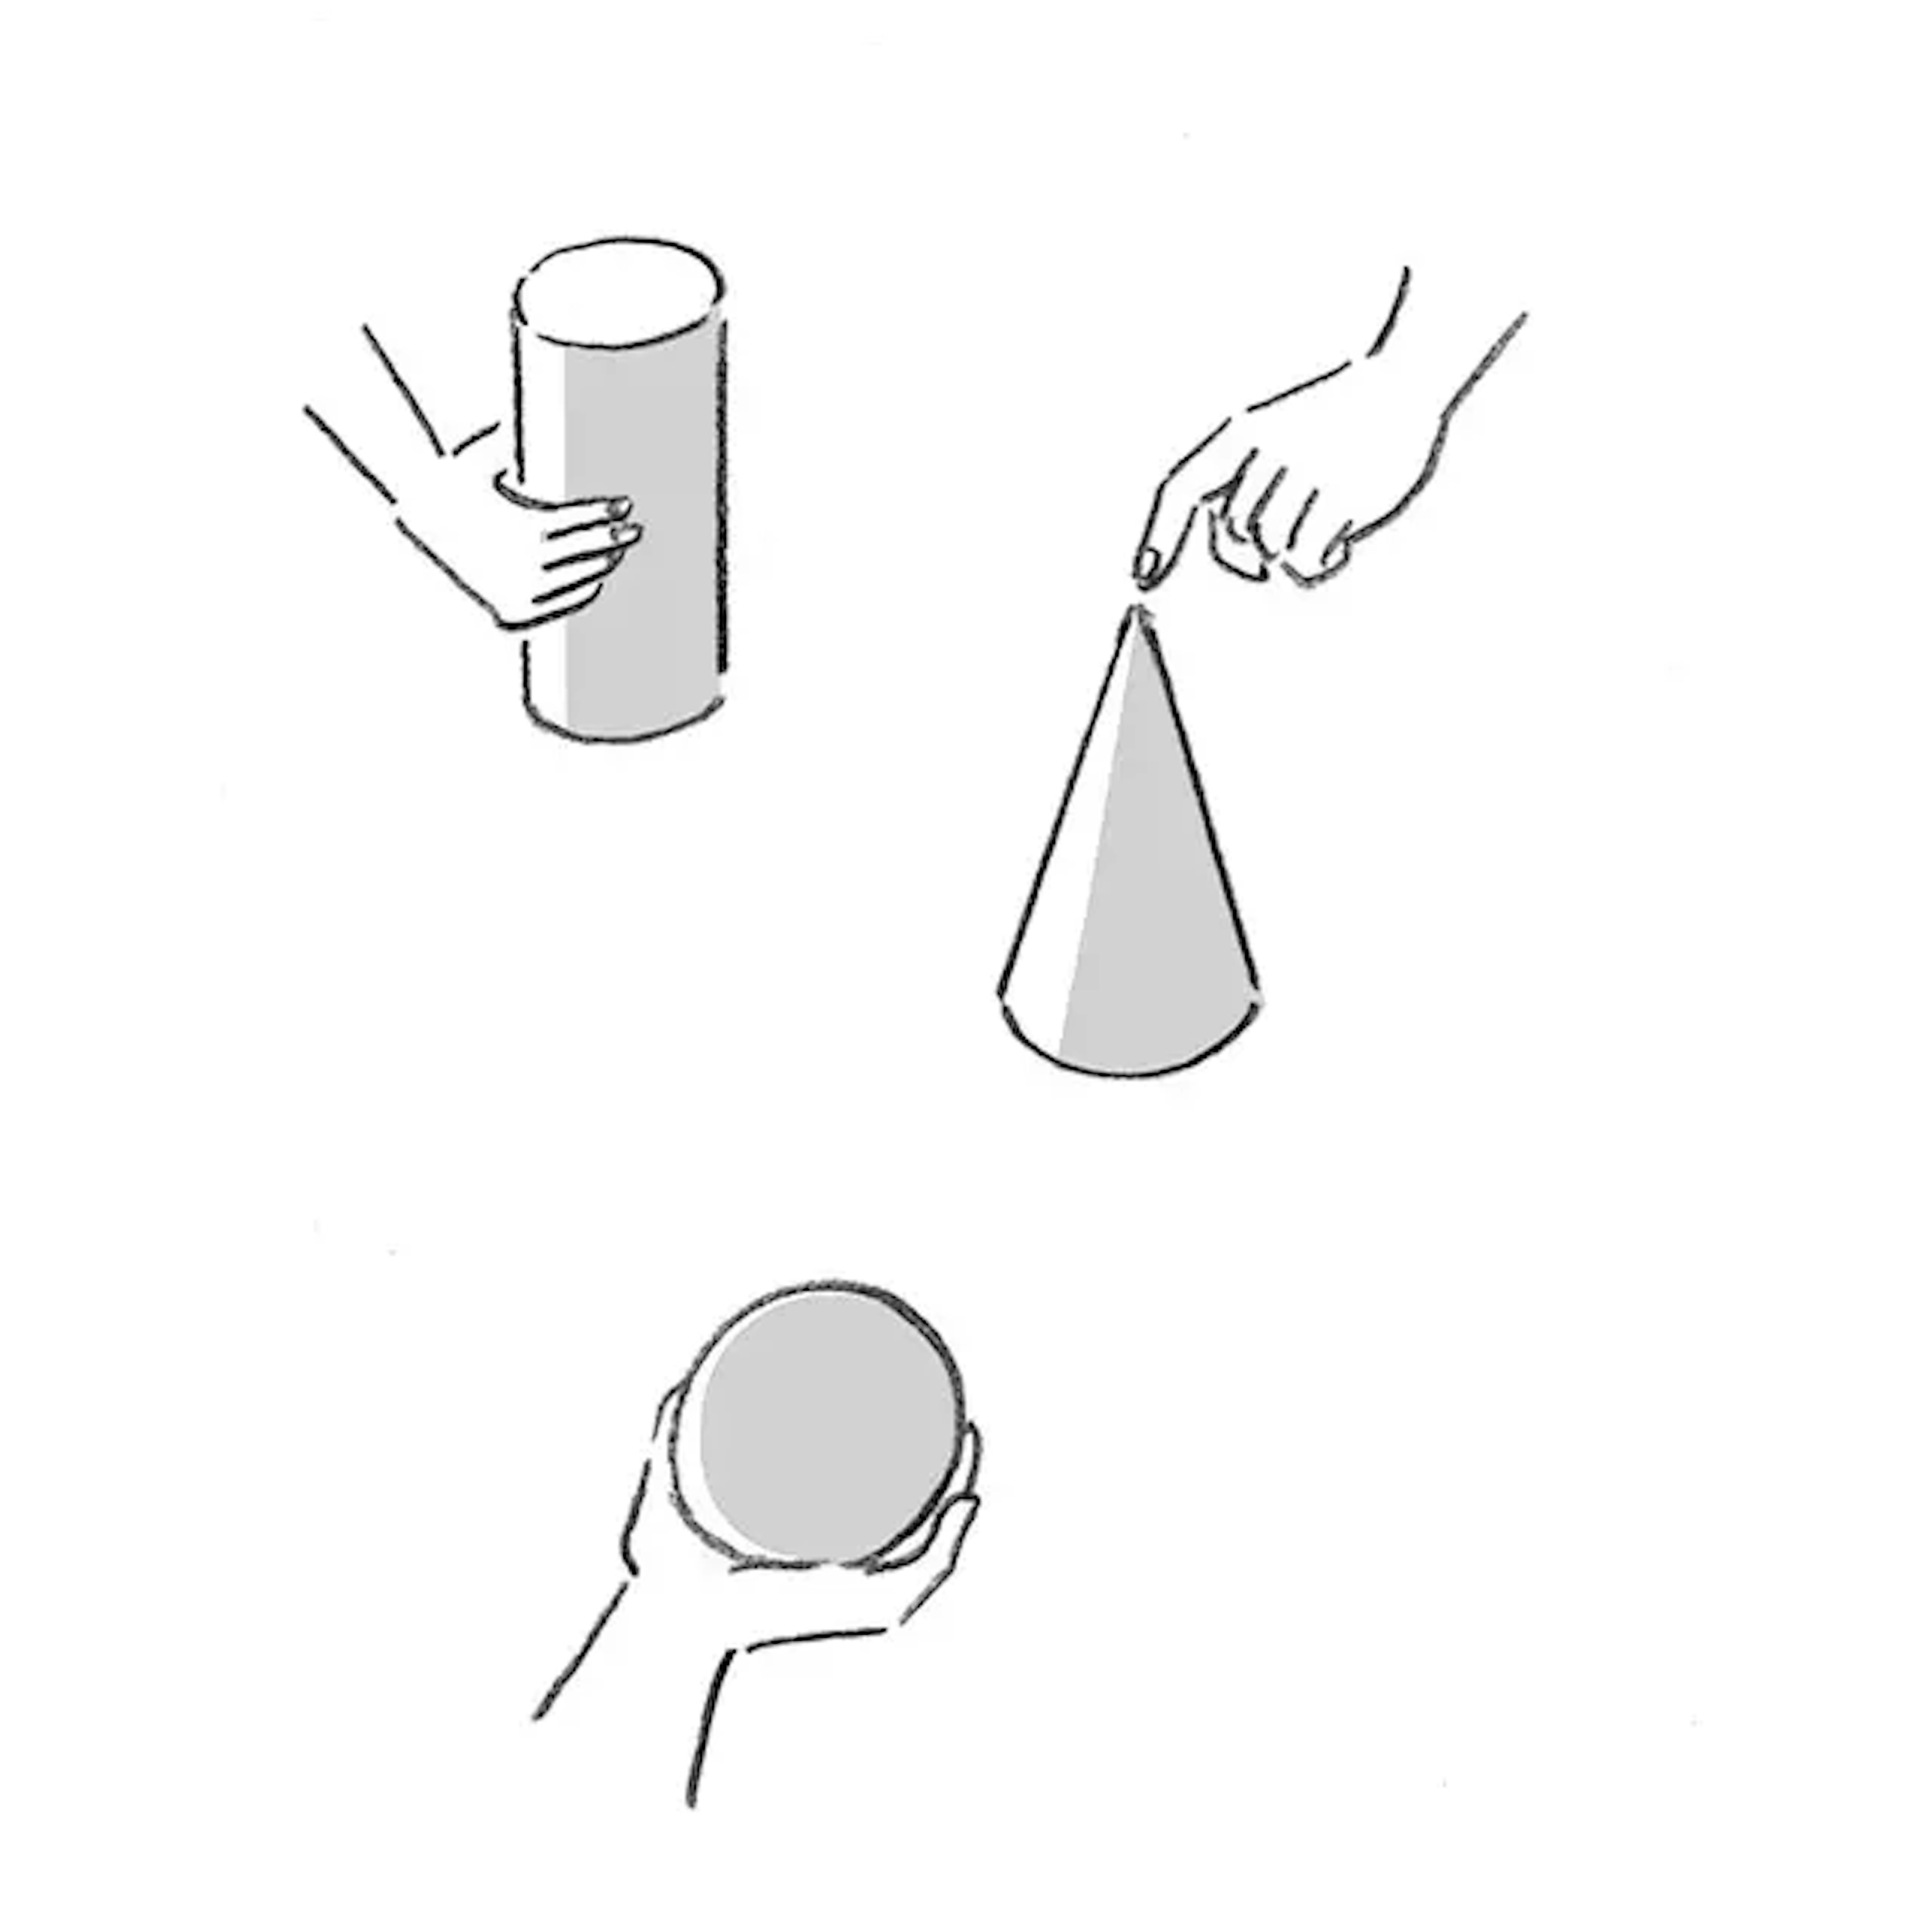 イラスト：円柱、円錐、球体にそれぞれ手が触れている